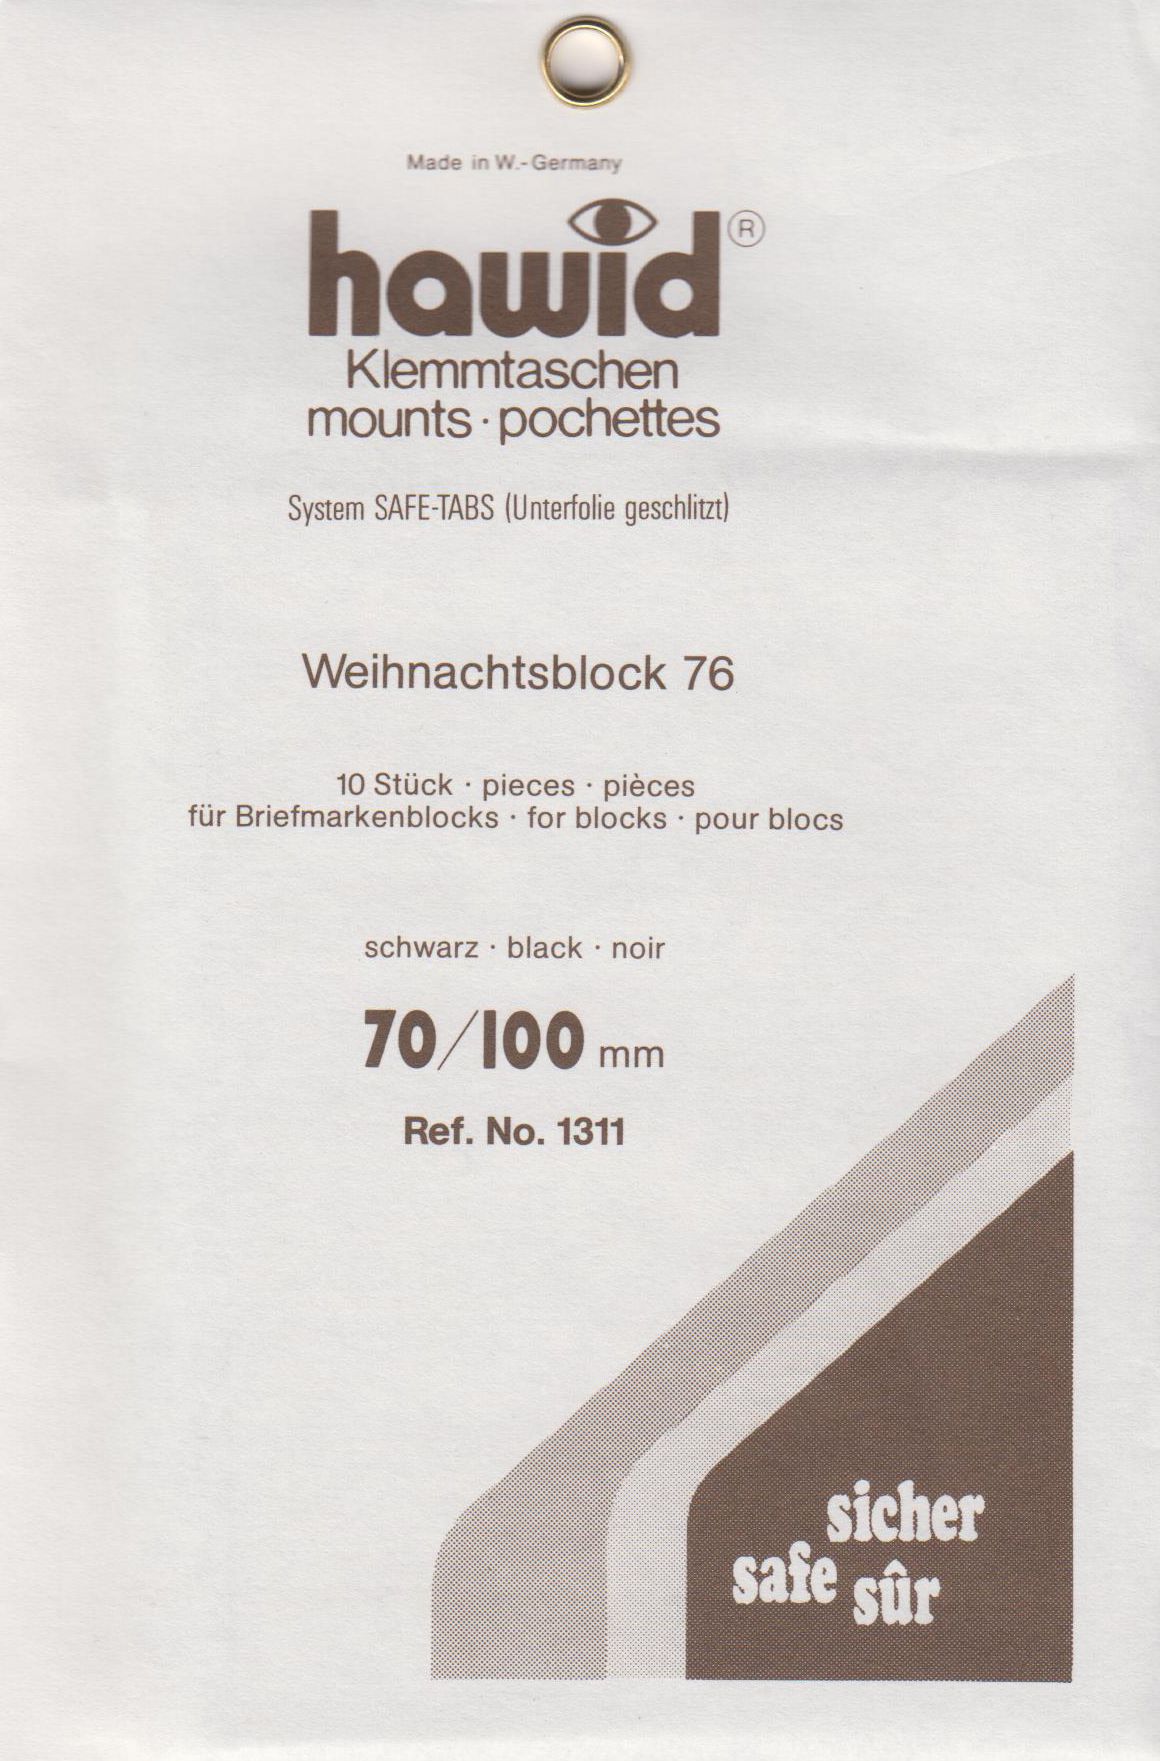 Hawid Klemmtasche 1311, 10 Stück schwarz, 70x100 mm, System SAFE-TABS